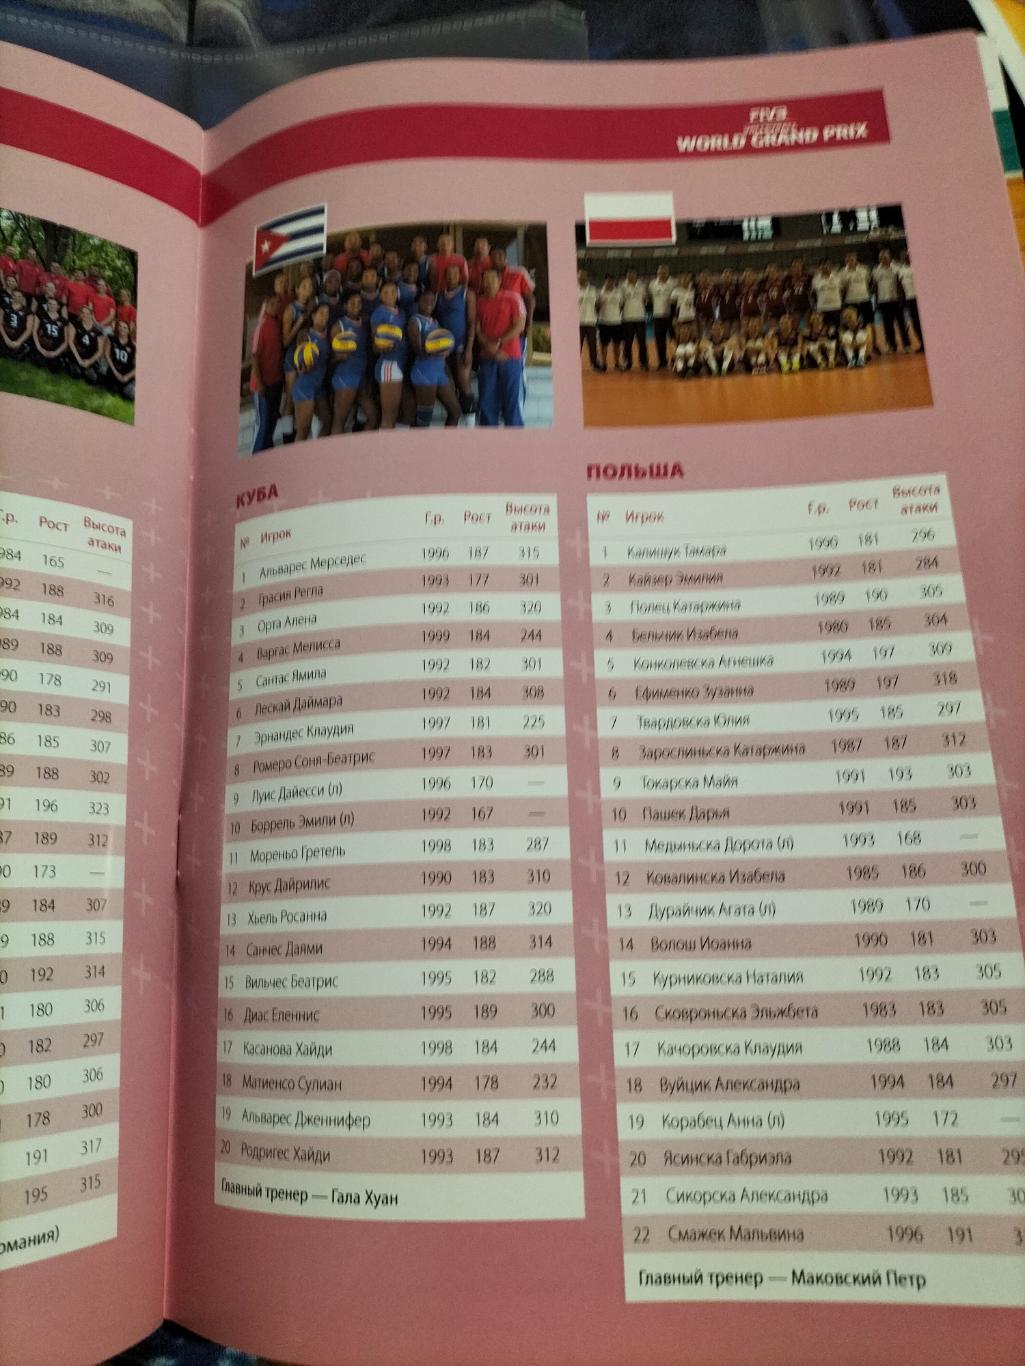 Официальная программа ФИВБ ГРАН-ПРИ 2014 по волейболу среди женских команд. 4